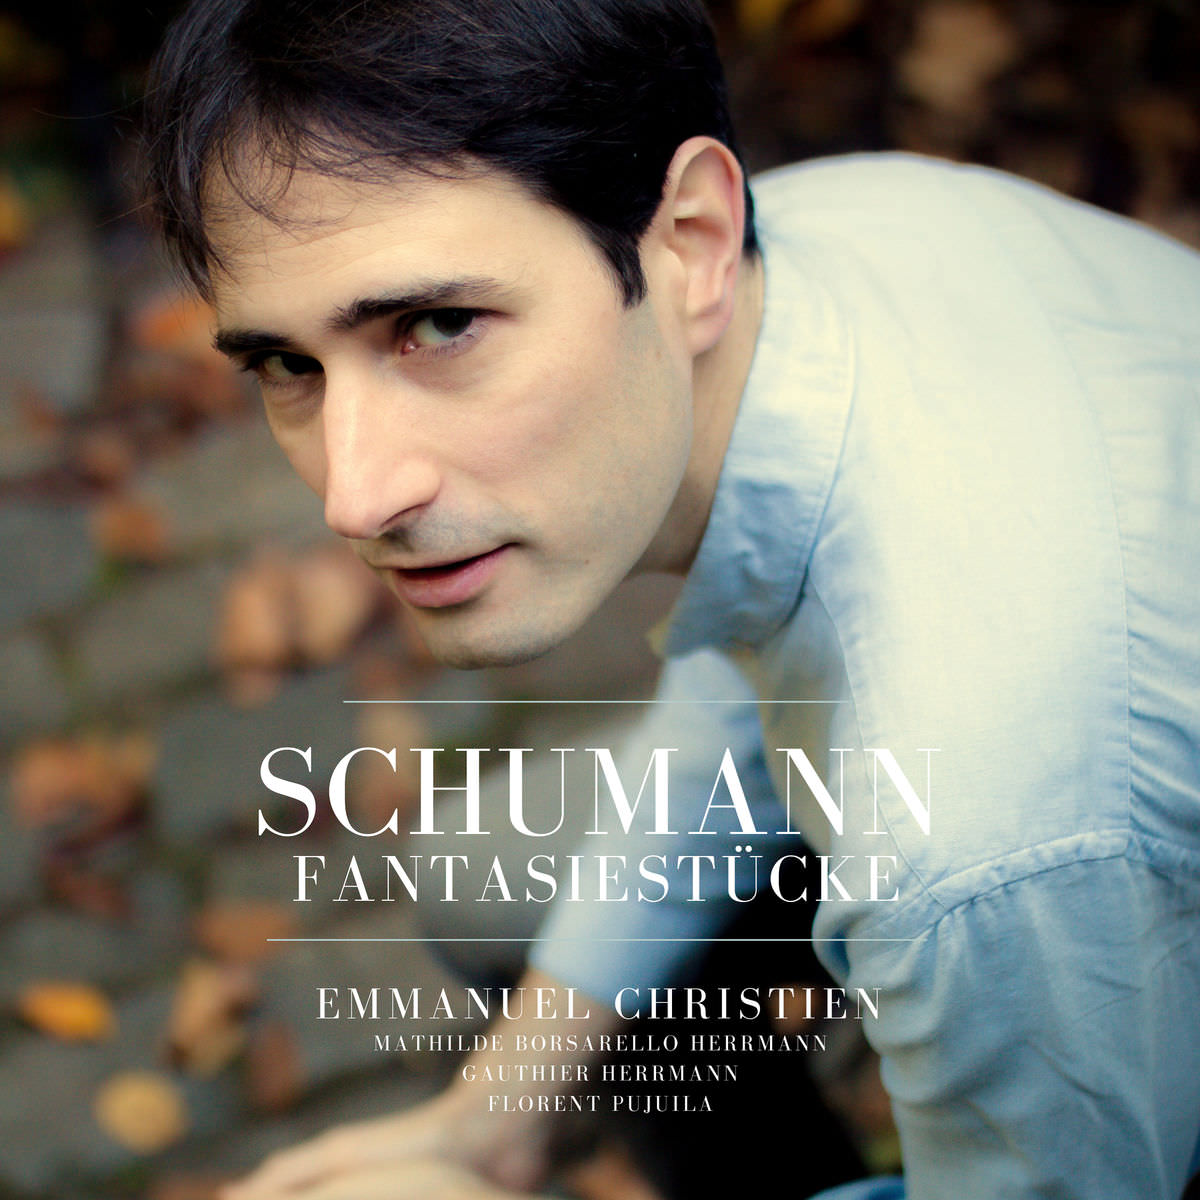 Emmanuel Christien, Florent Pujuila - Schumann: Fantaisiestucke (2018) [FLAC 24bit/96kHz]